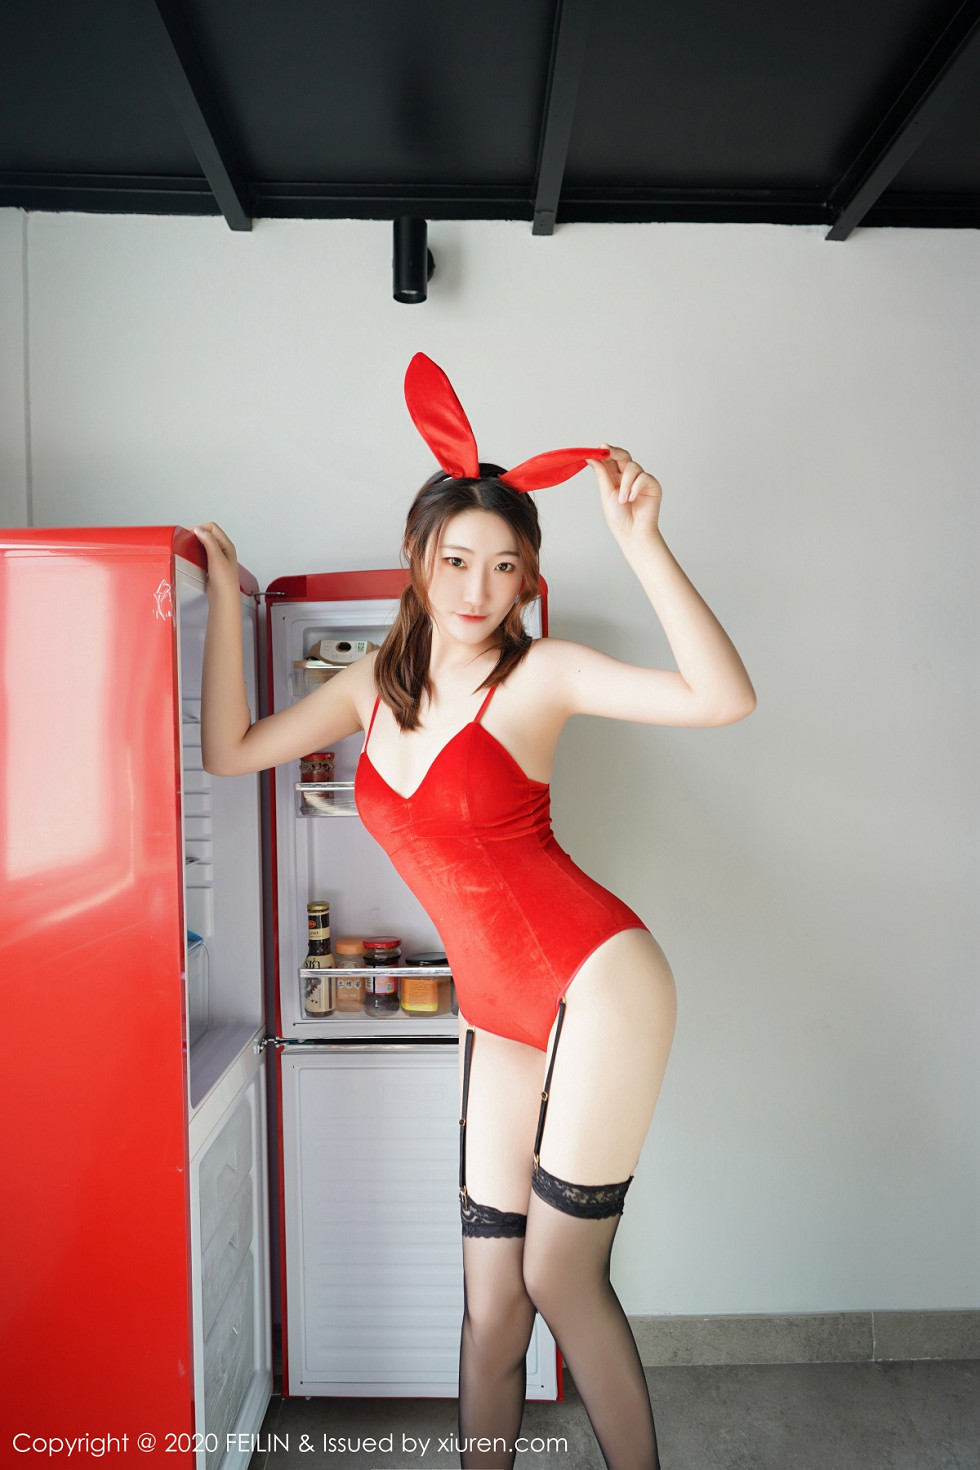 FeiLin嗲囡囡VOL嫩模A小熊猫私房红色兔女郎配吊带黑丝秀完美身材魅惑套图写真